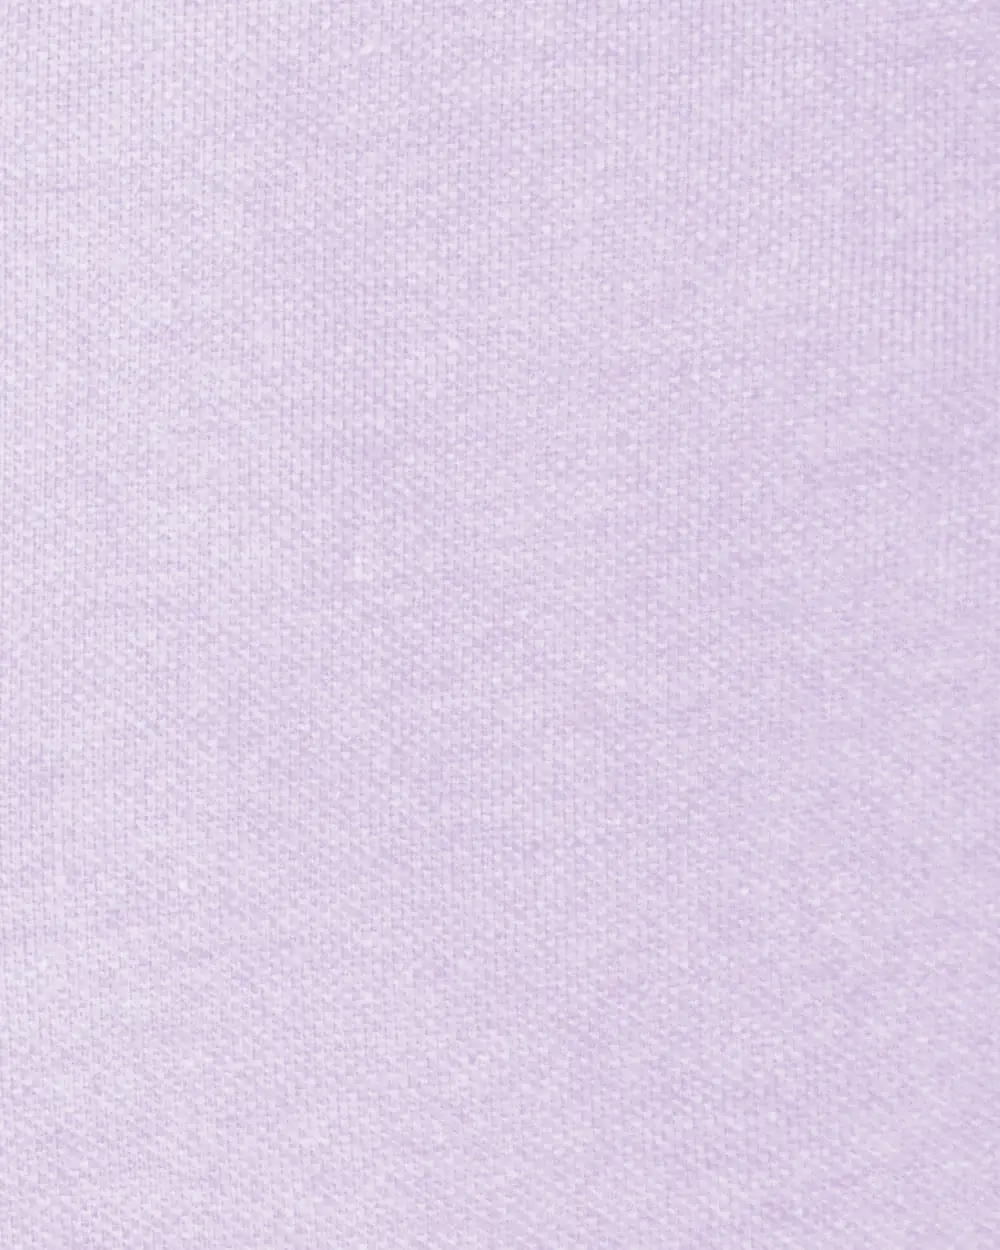 Blusa sport slim fit manga corta lila